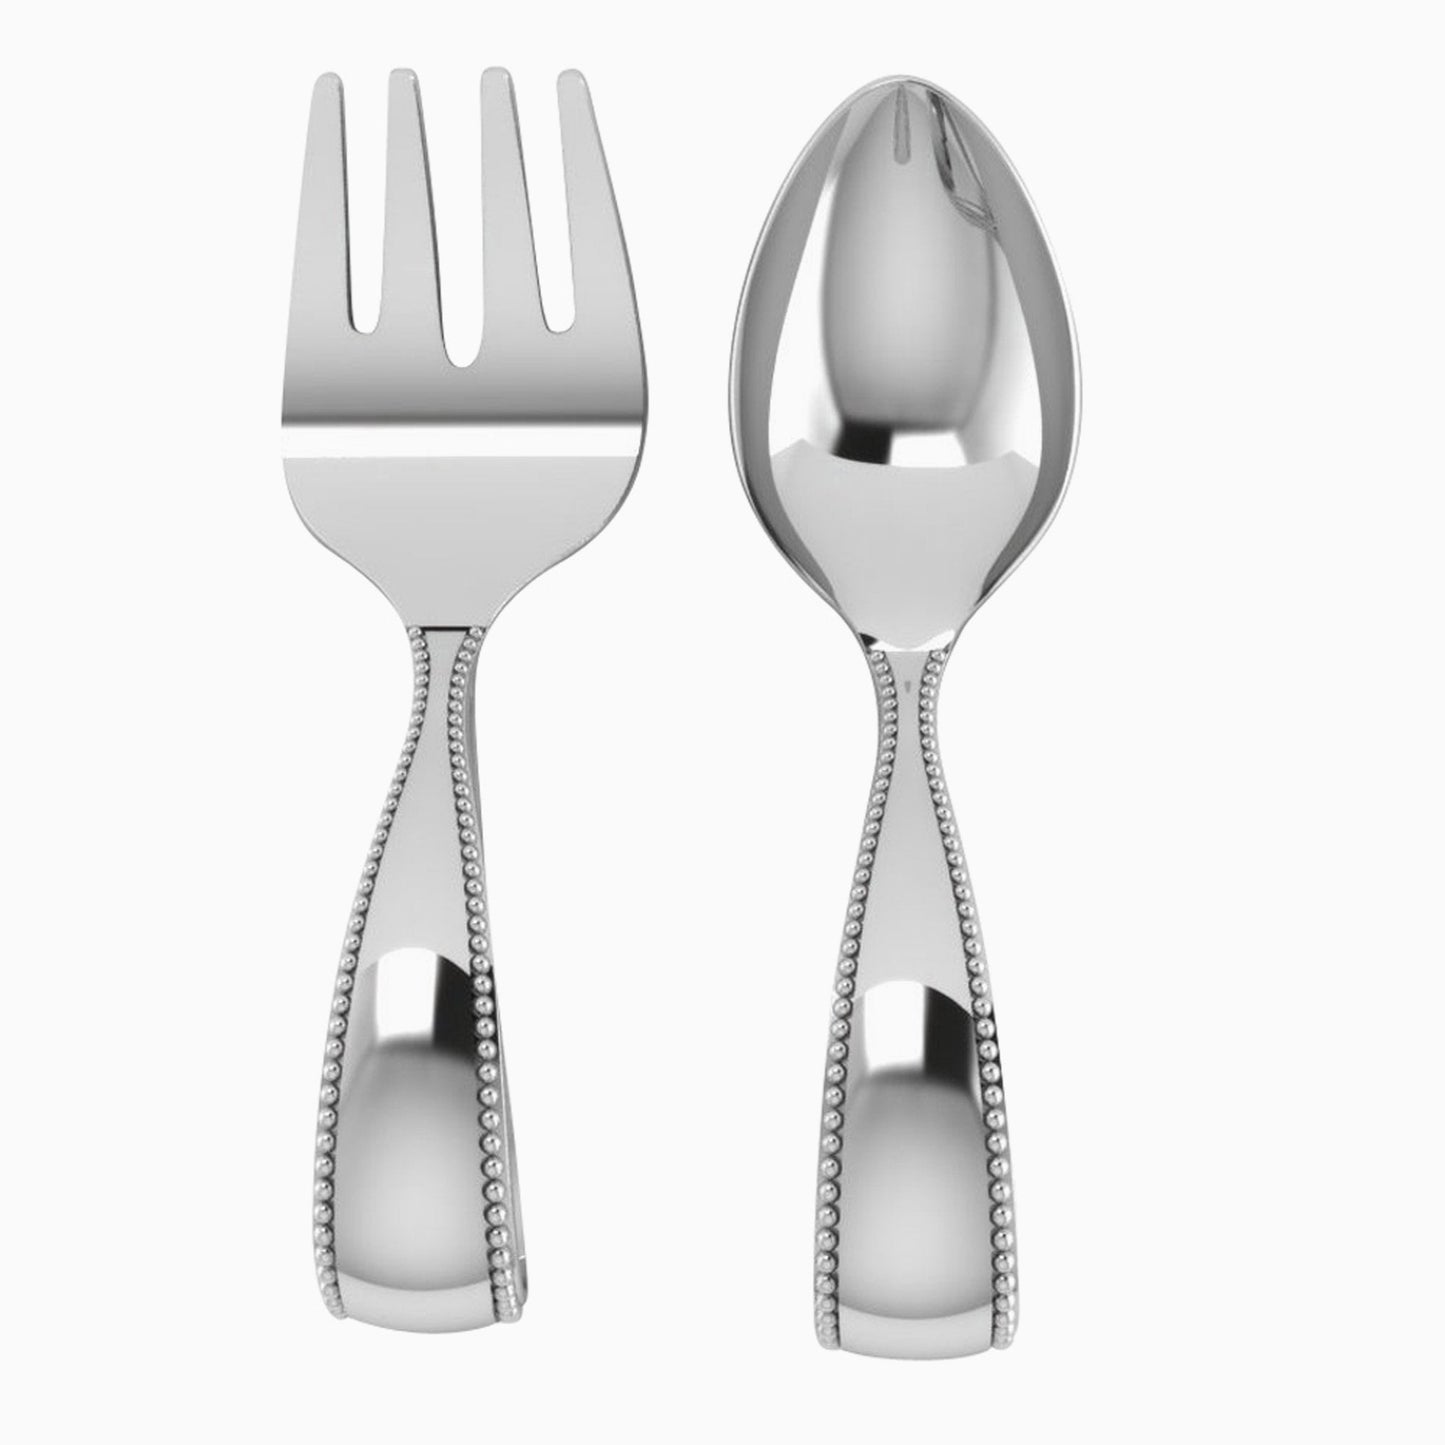 Beaded Loop Sterling Silver Baby Spoon & Fork Set by Krysaliis